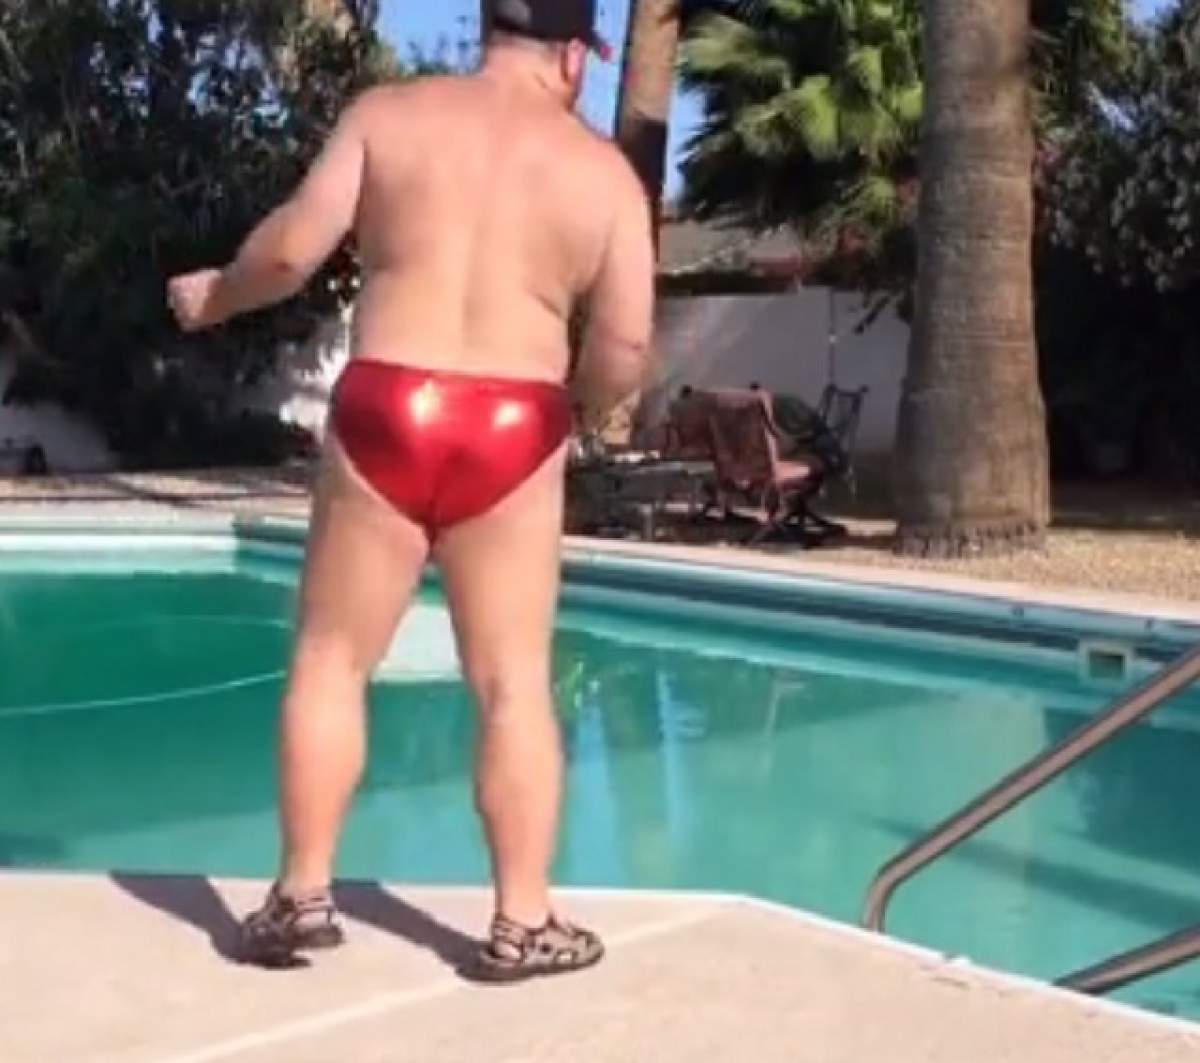 VIDEO AMUZANT / Ce face acest bărbat în slip, pe marginea piscinei, a ajuns viral. Râzi cu lacrimi!